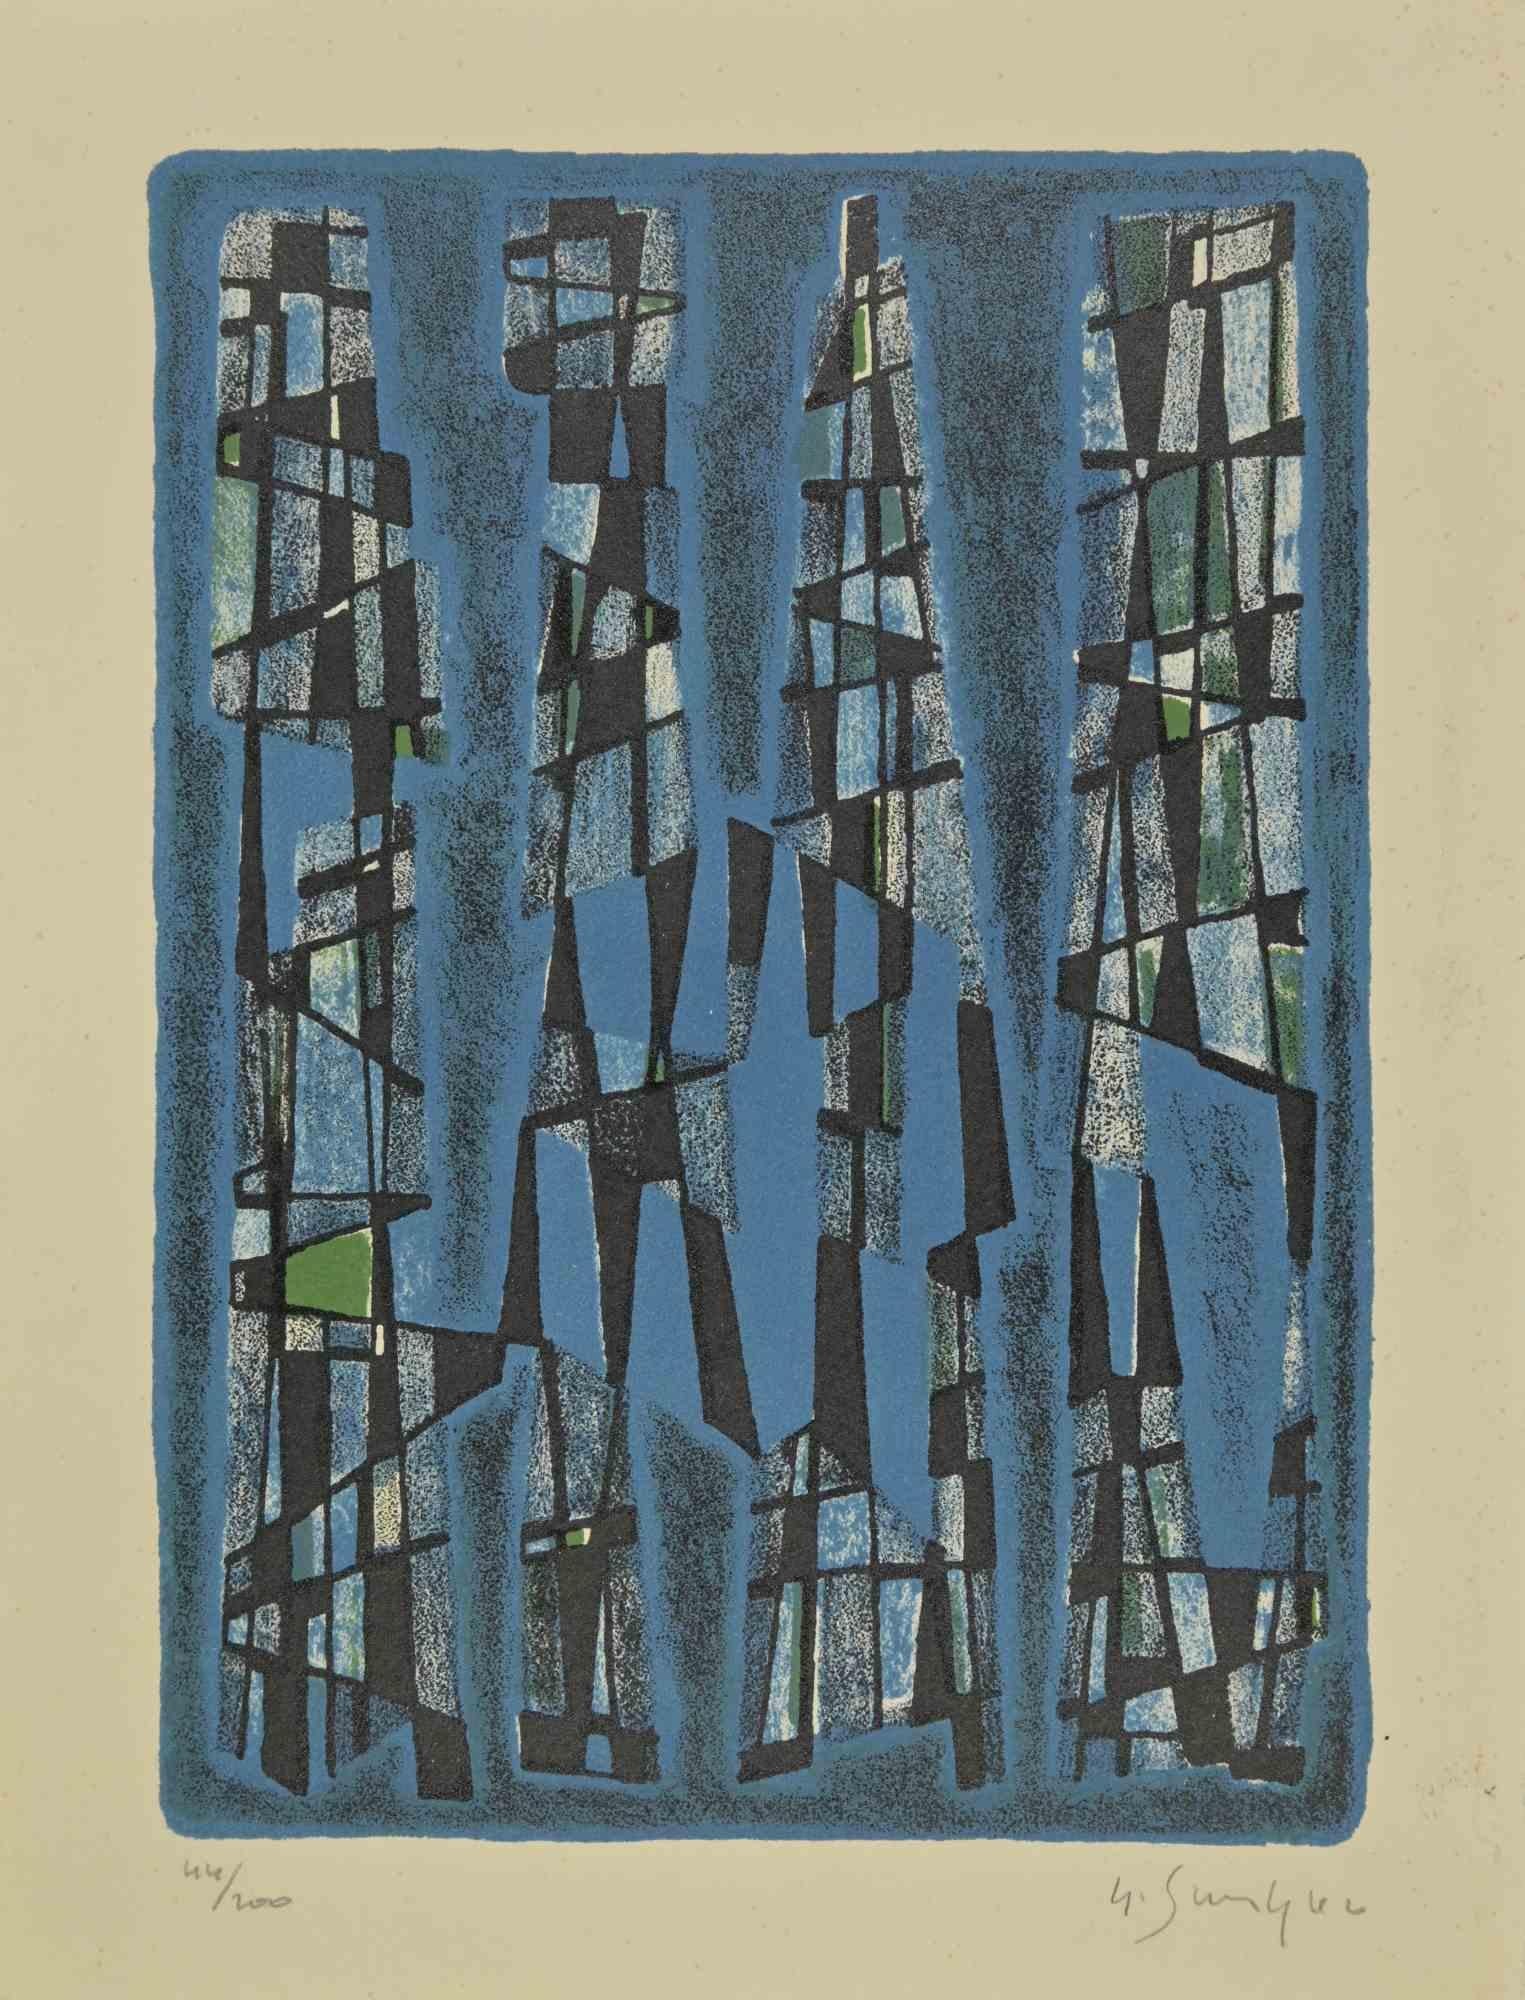 Sans titre  est une œuvre d'art réalisée par Gustave Singier (1909-1984).

Lithographie , cm 32,5x25. 

Signé et numéroté (exemplaire 44/200) au crayon au recto.

Très bon état.

 

Gustave Singier est né en 1909 en Belgique, à Warneton en Flandre.